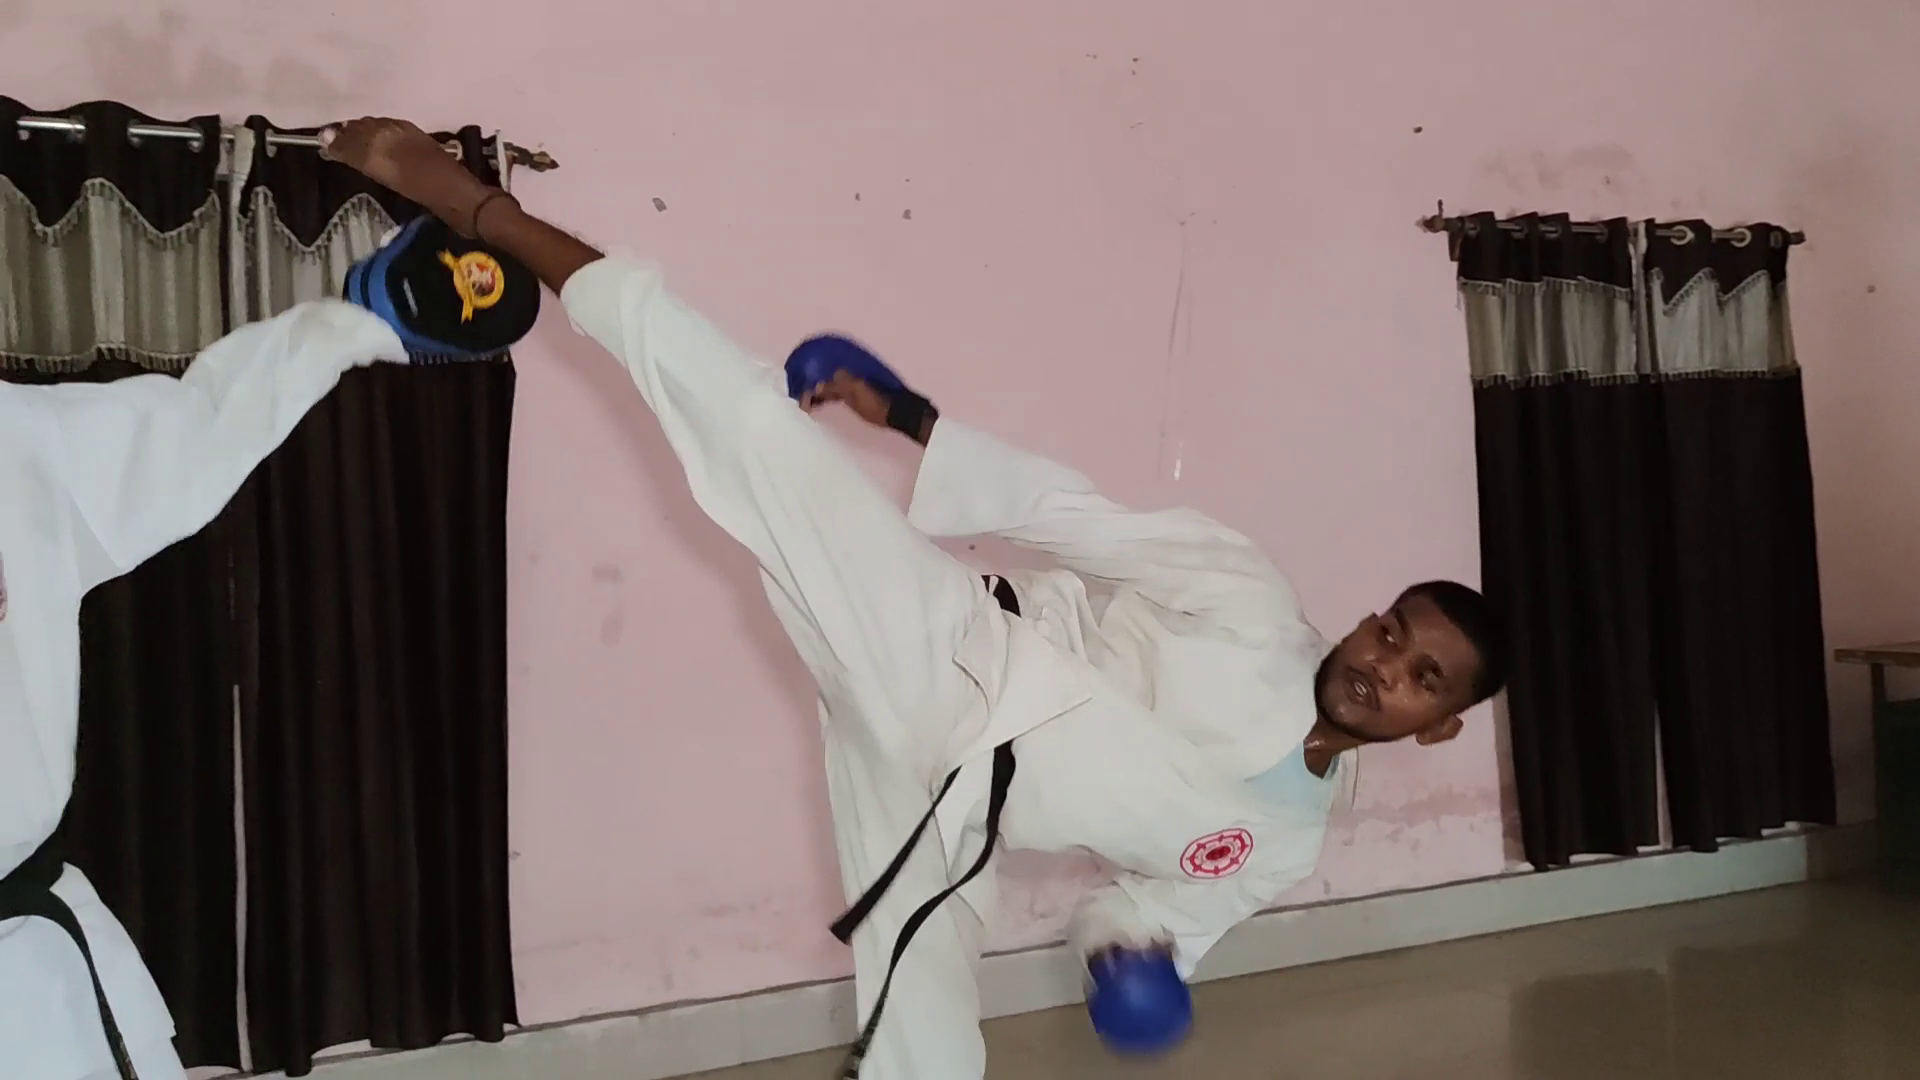 Saurabh Bharti practicing karate